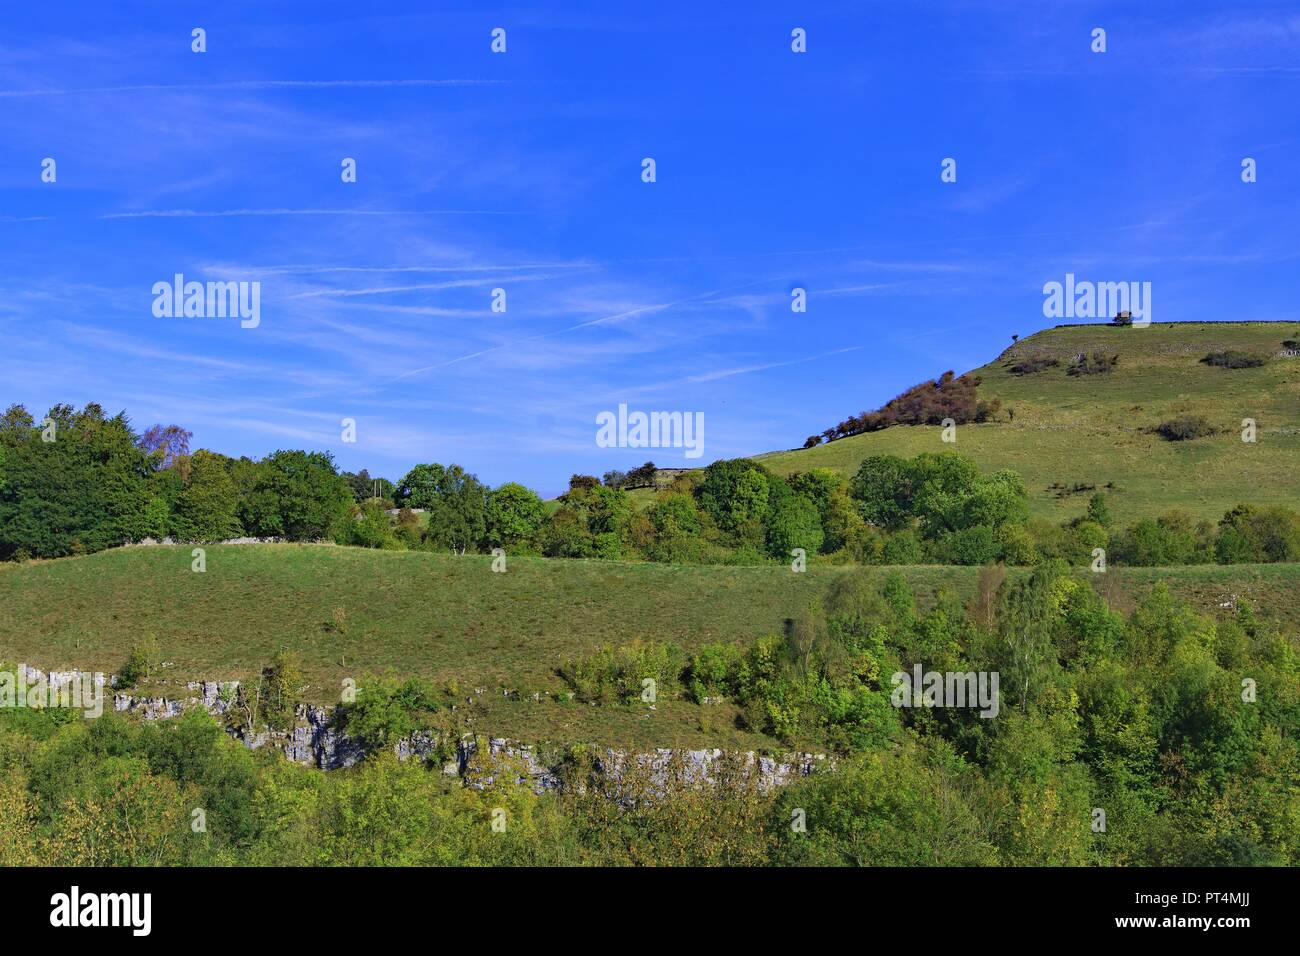 La cattura di un bel cielo blu giorno nel distretto di picco del Derbyshire, lungo il sentiero Monsal. Foto Stock